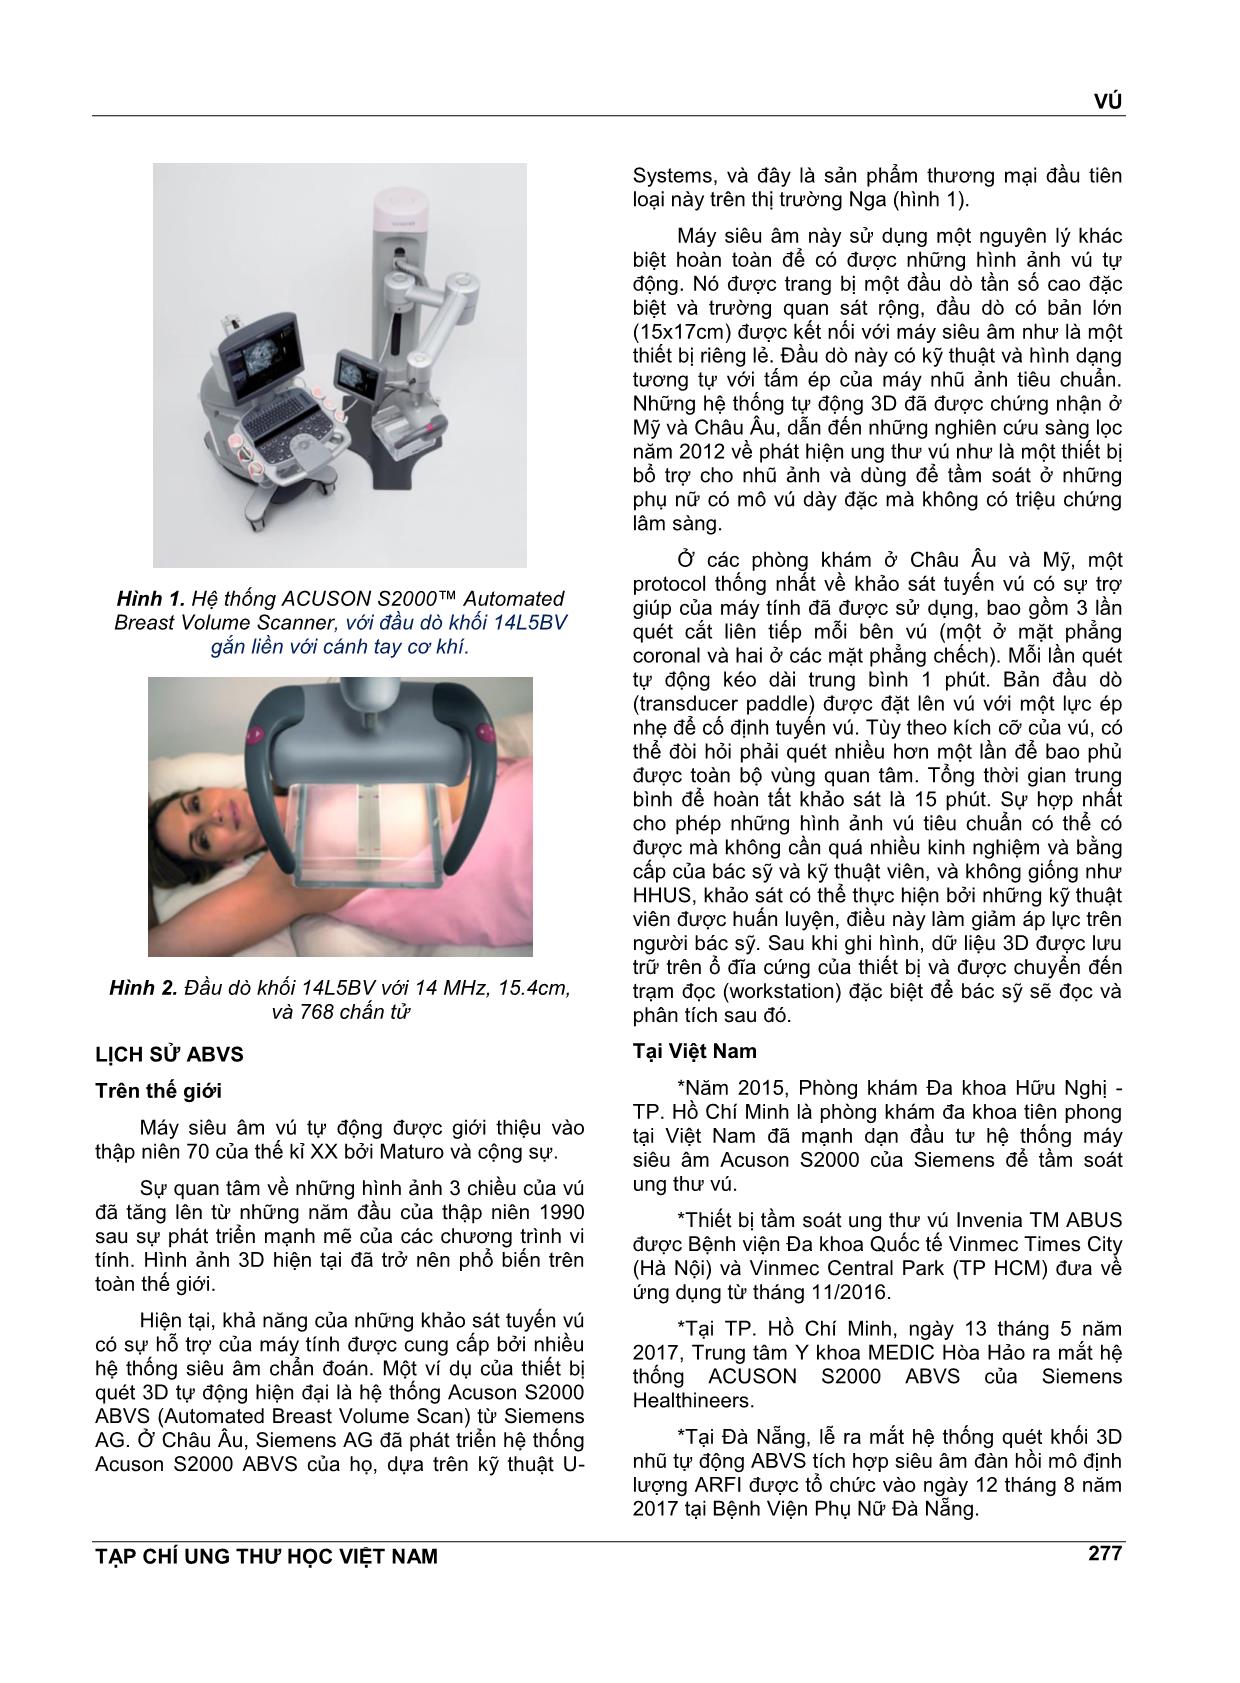 Máy siêu vú tự động 3D trang 2